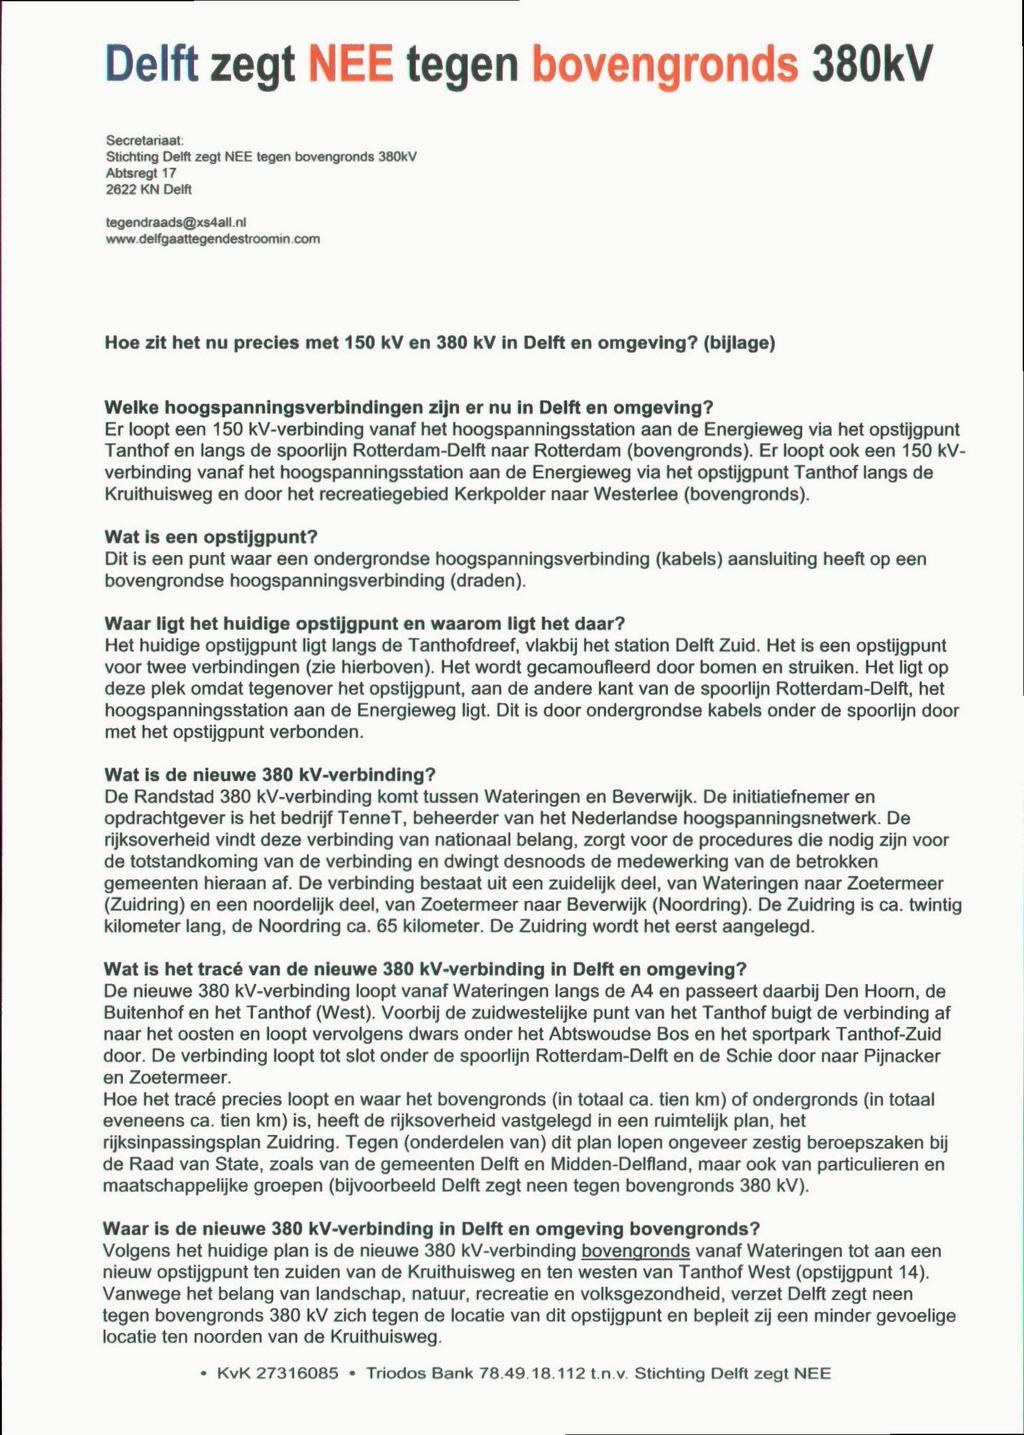 Delft zegt NEE tegen bovengronds 380kV Secretariaat: Stichting Delft zegt NEE tegen bovengronds 380kV Abtsregt 17 2622 KN Delft tegendraads@xs4all.